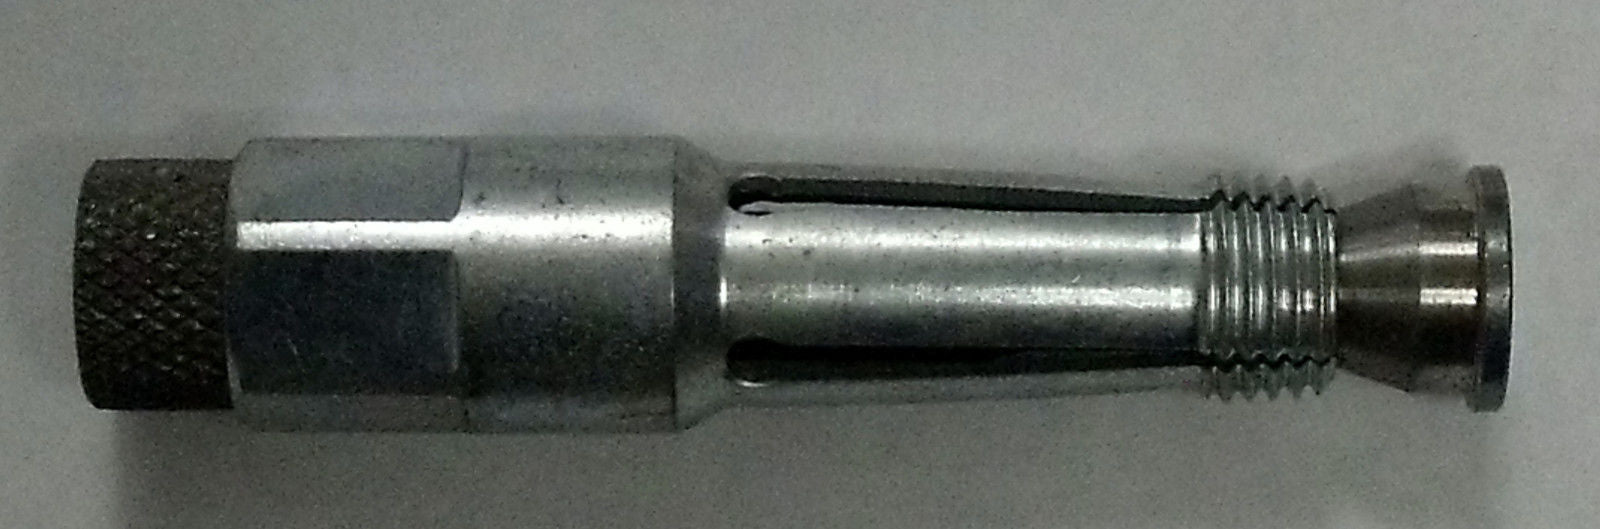 KD Tools 3690 18mm Spark Plug Re-Thread Tool